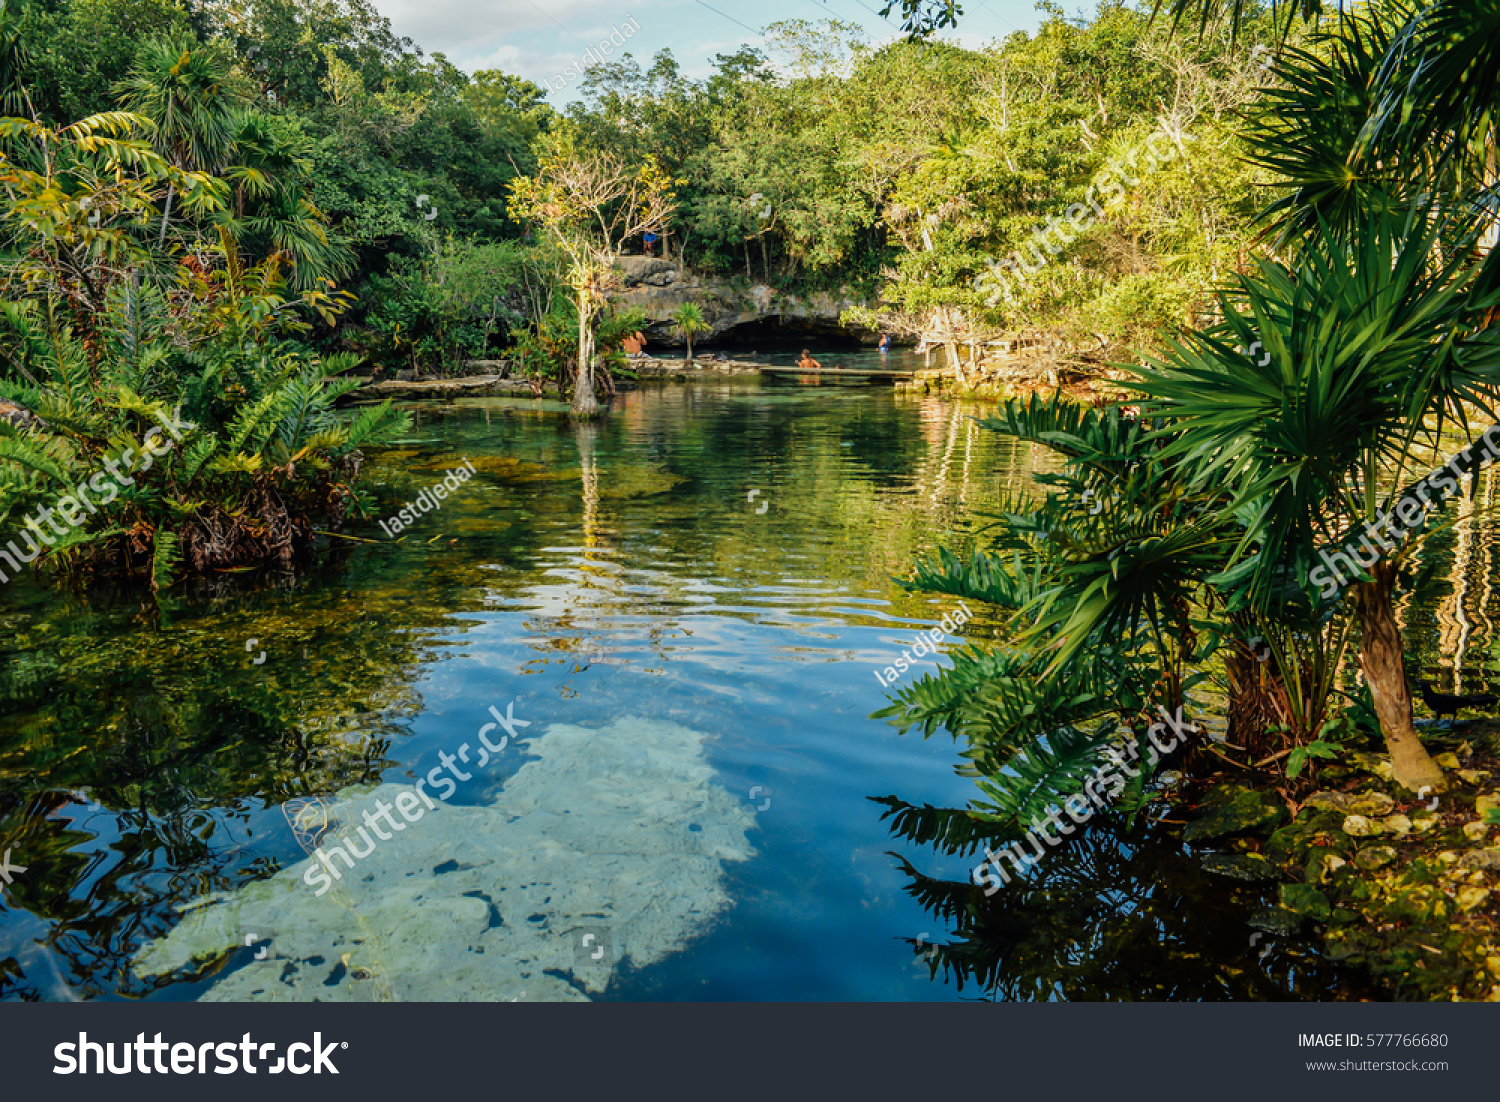 Azul cenote, Akumal, Quintana Roo, Mexico #577766680